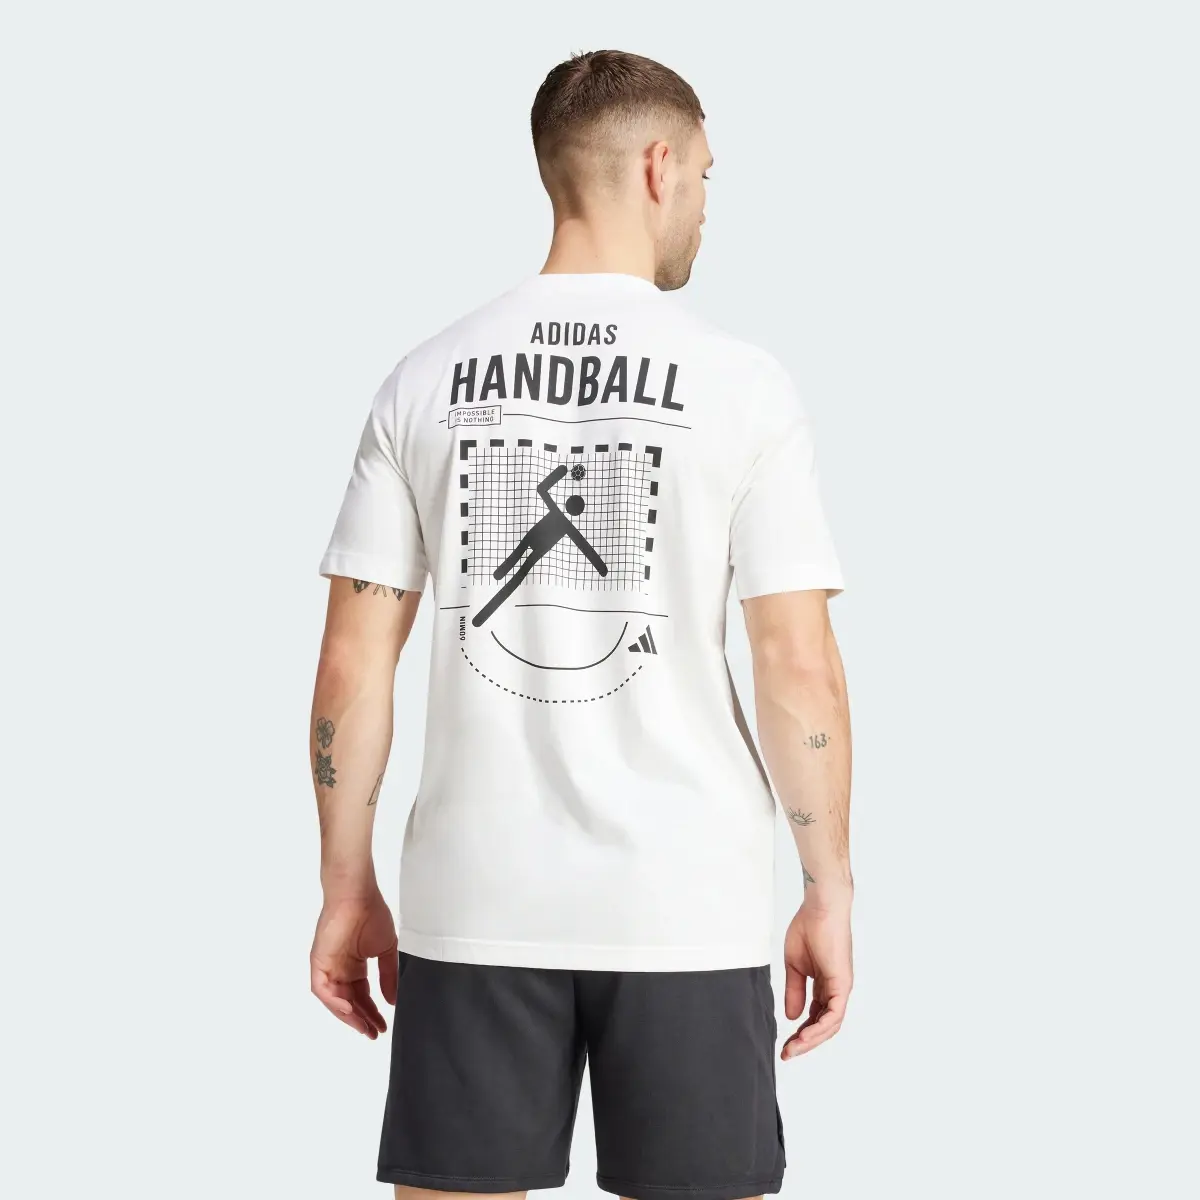 Adidas T-shirt graphique Handball Category. 3